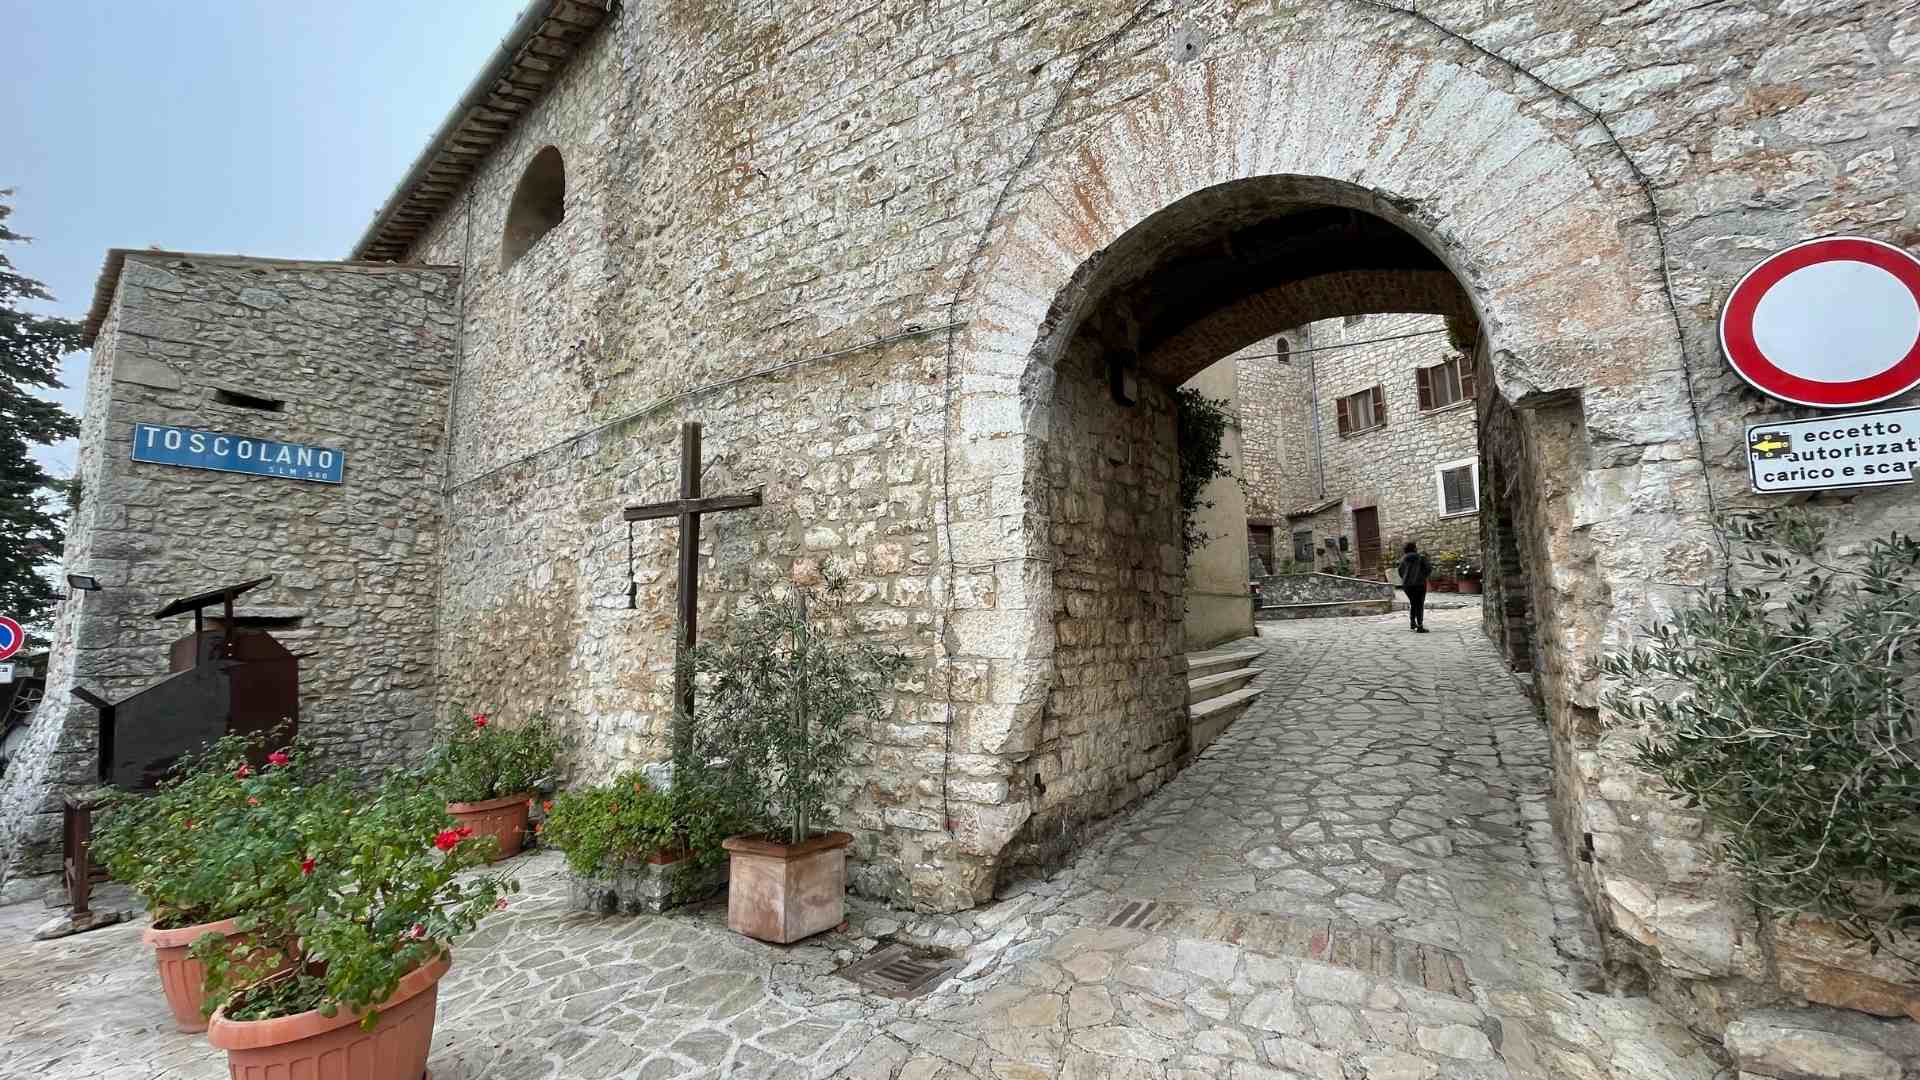 40-ingresso-al-castello-di-toscano-avigliano-umbro